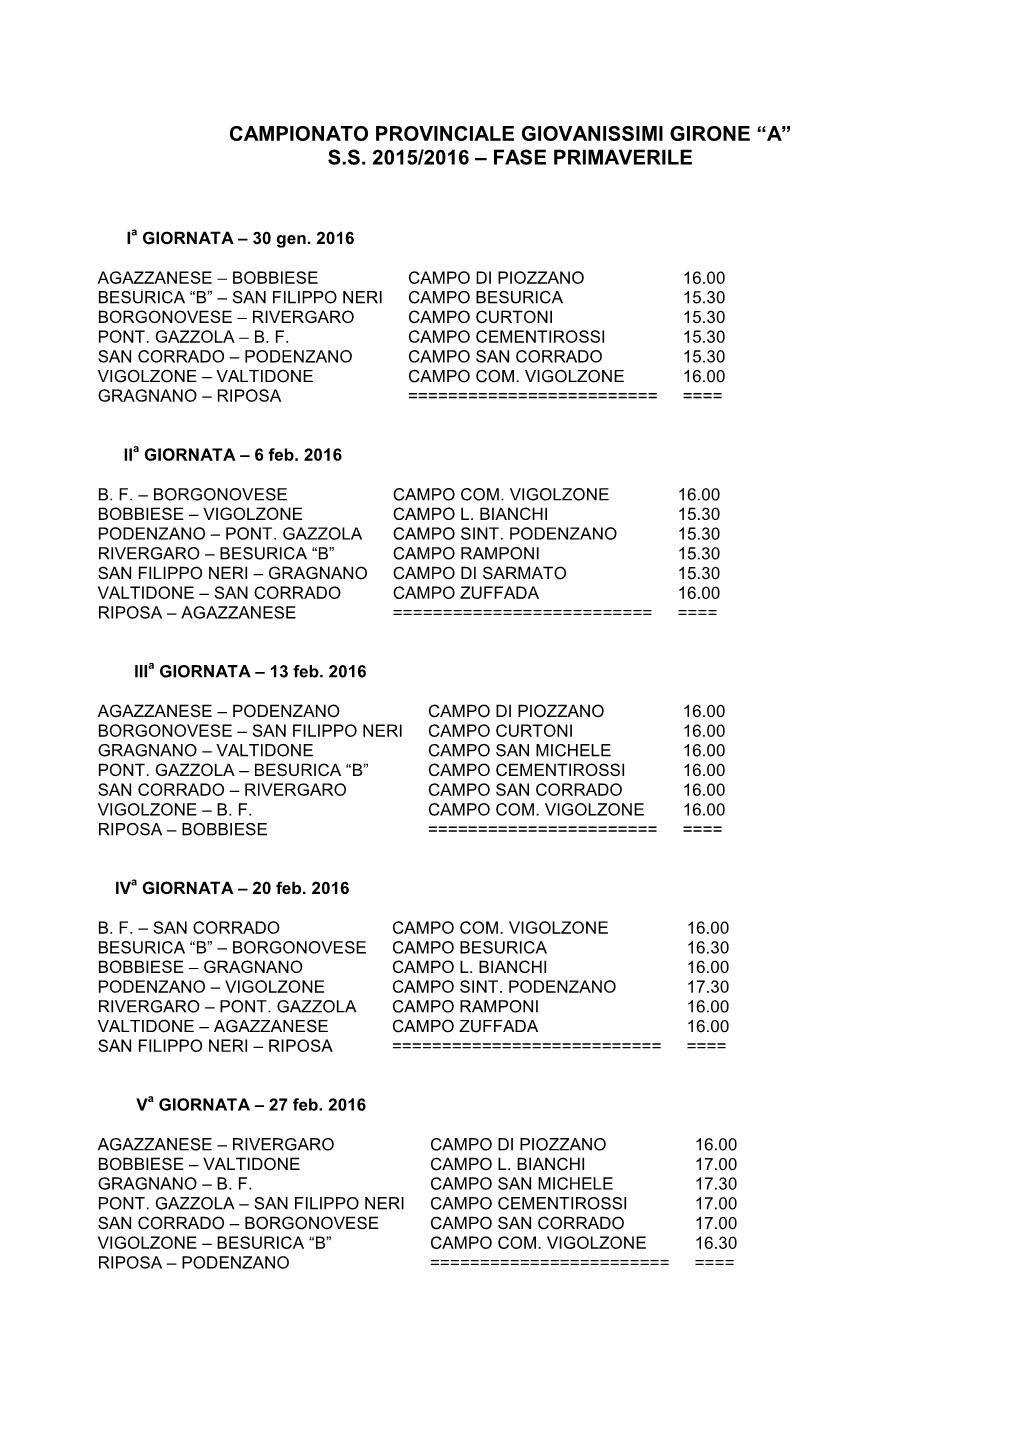 Campionato Provinciale Giovanissimi Girone “A” Ss 2015/2016